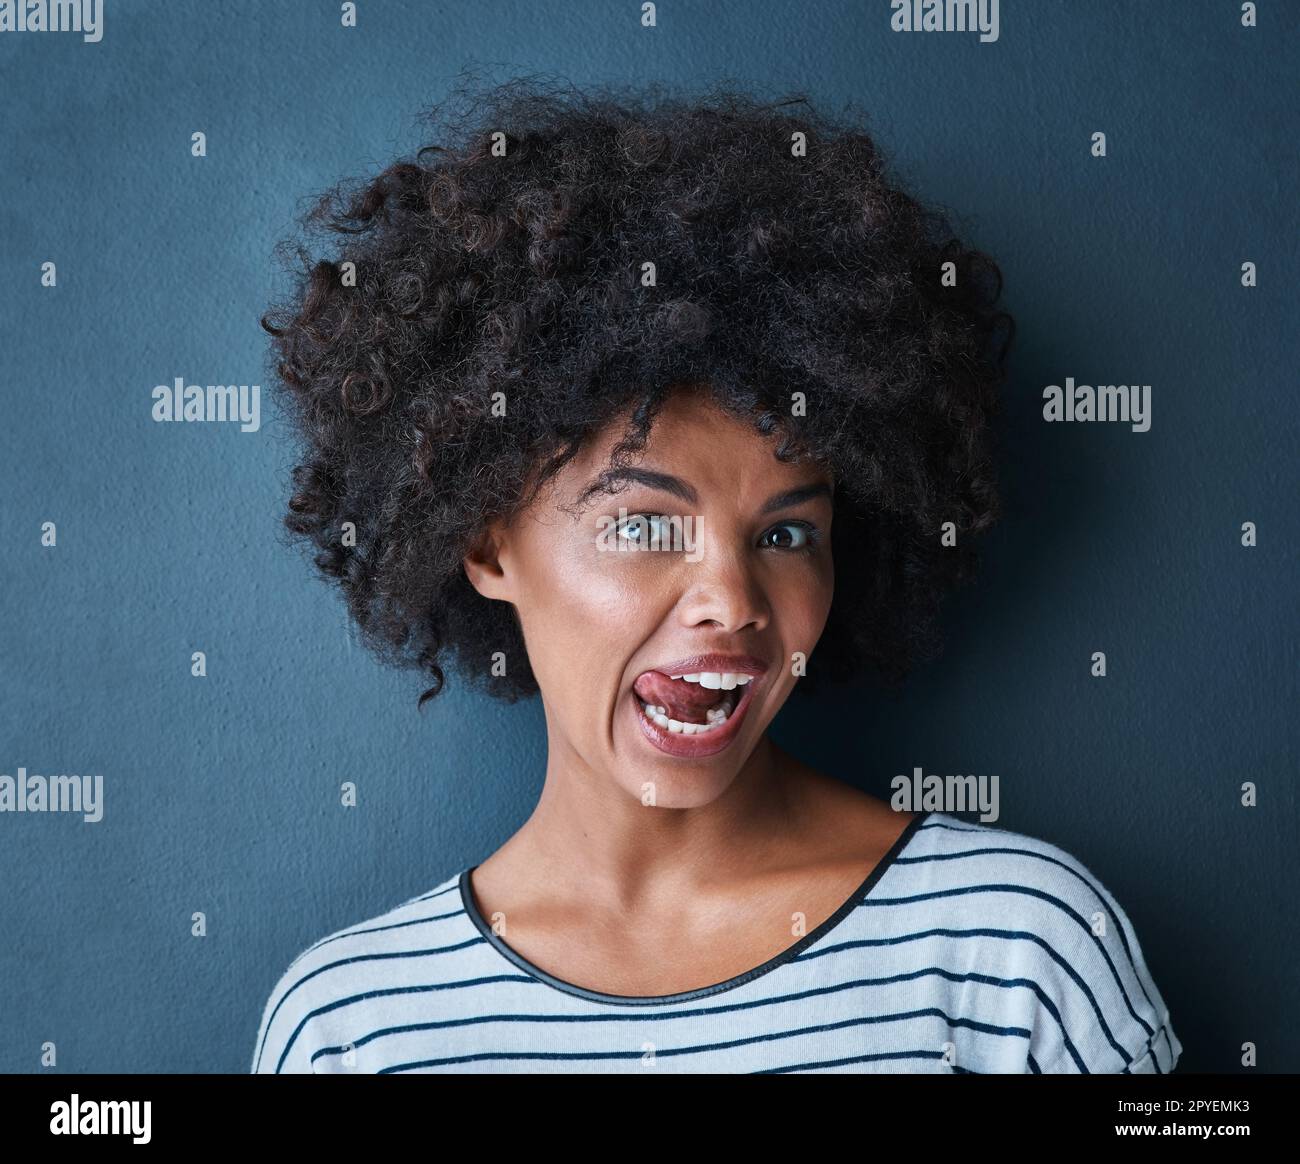 Manchmal muss man einfach die Dummheit rauslassen. Studio-Porträt einer attraktiven jungen Frau, die verspielt ihre Zunge vor blauem Hintergrund herausstreckt. Stockfoto